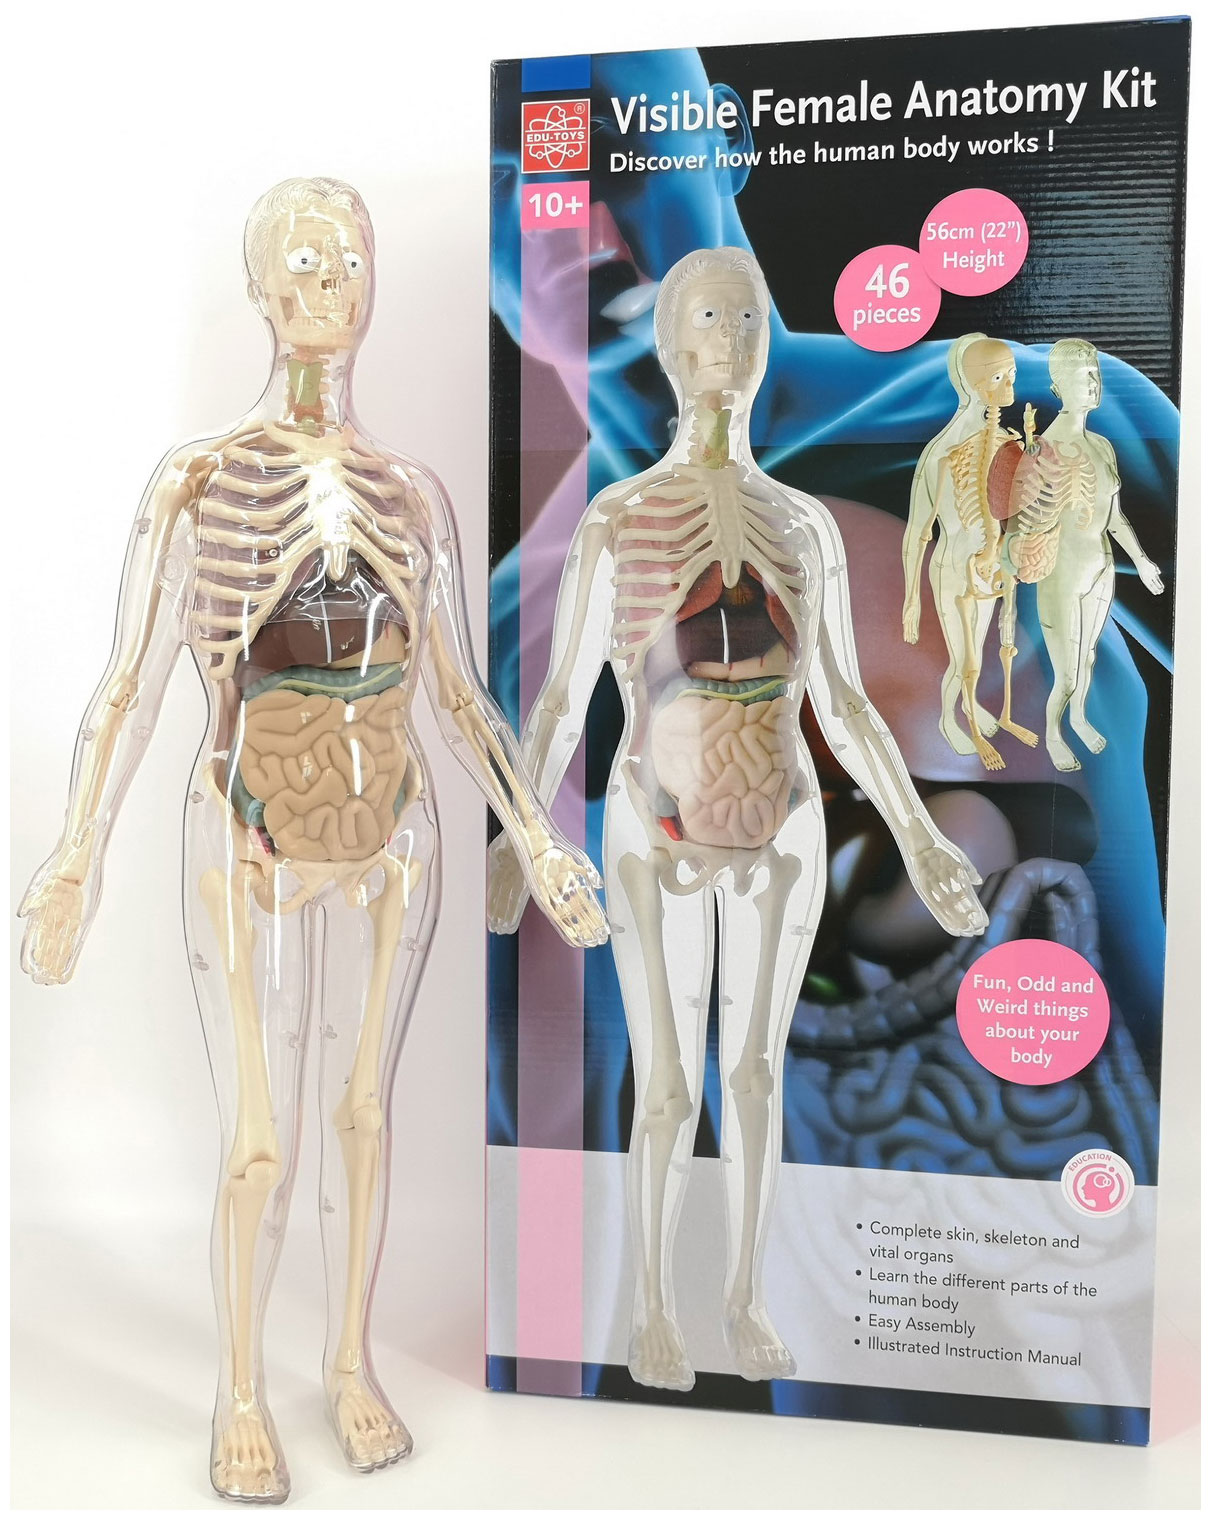 гишар жак анатомия картография человеческого тела Анатомический набор Edu toys MK001 (органы, скелет 56см, жен.)